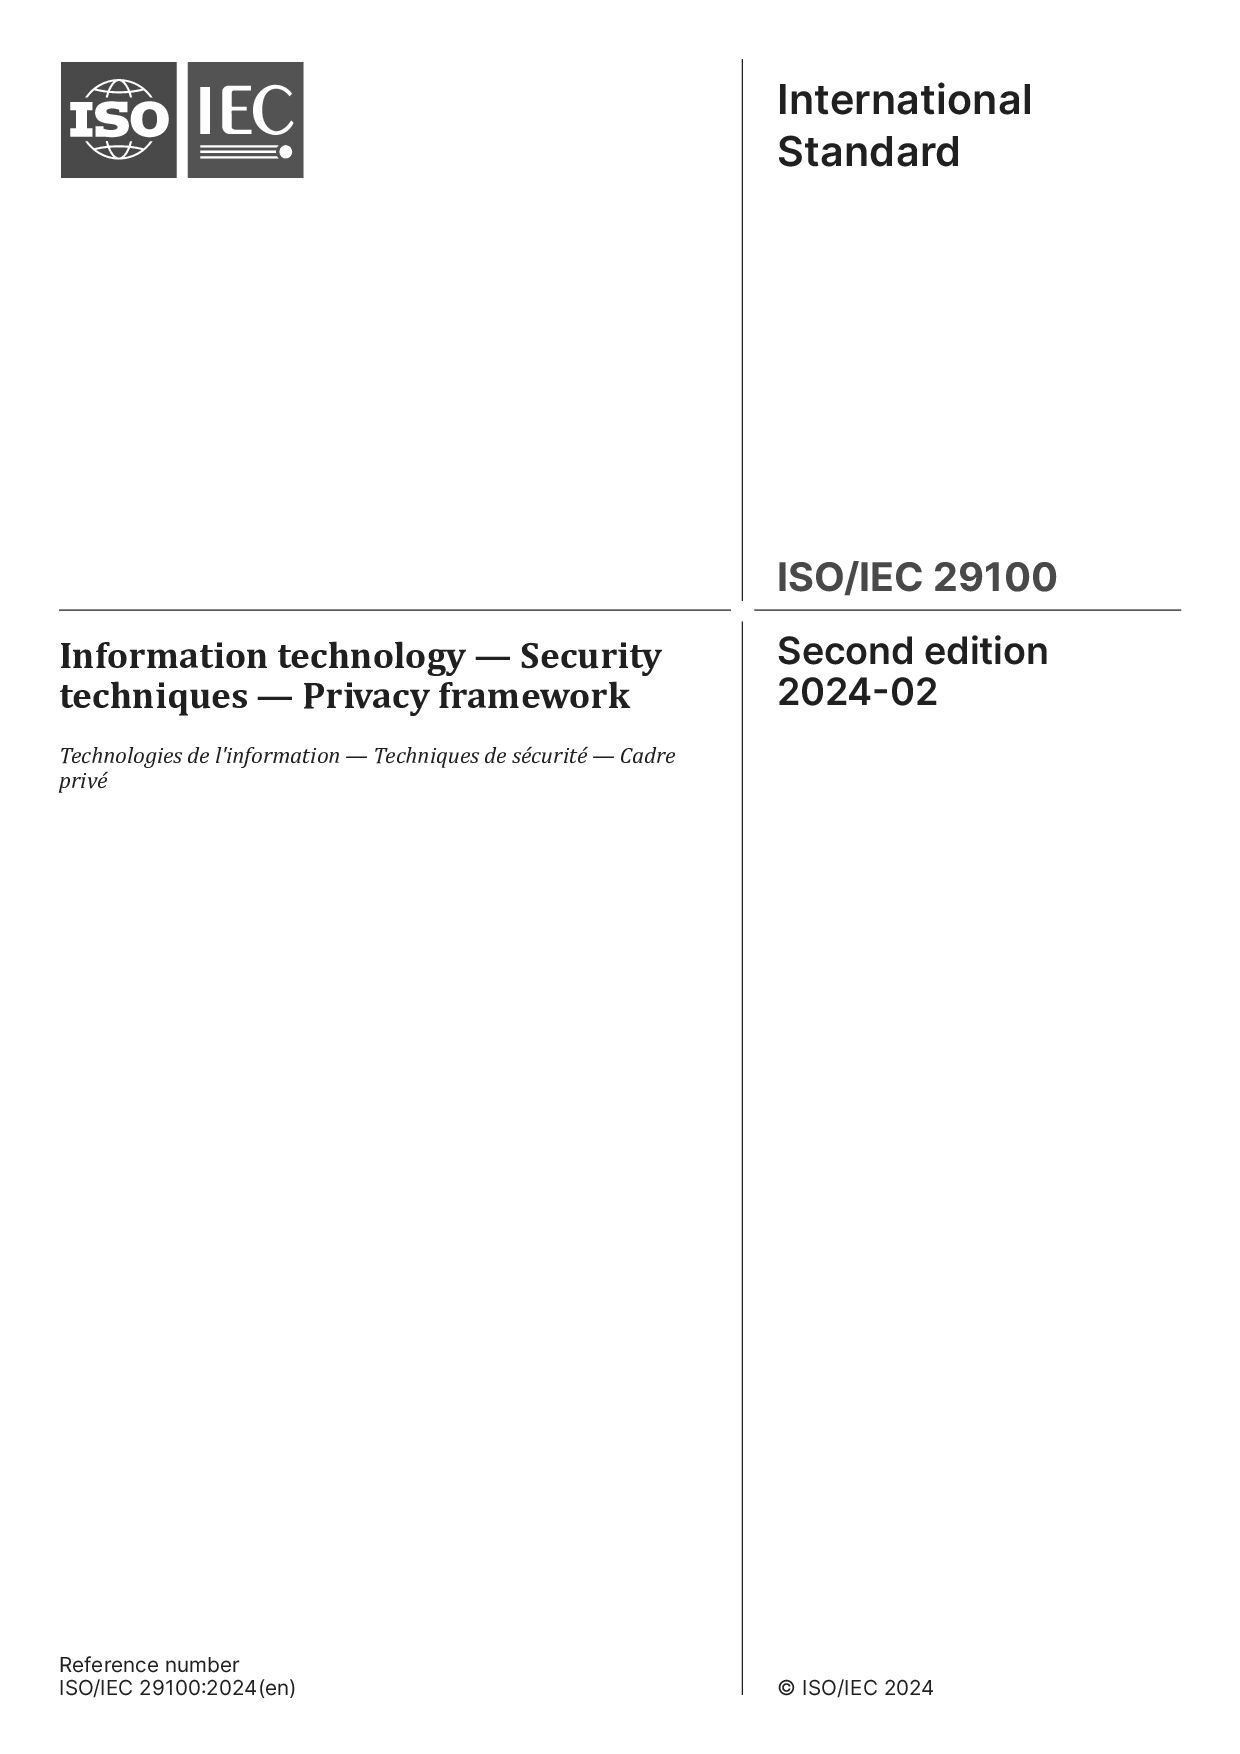 ISO/IEC 29100:2024封面图